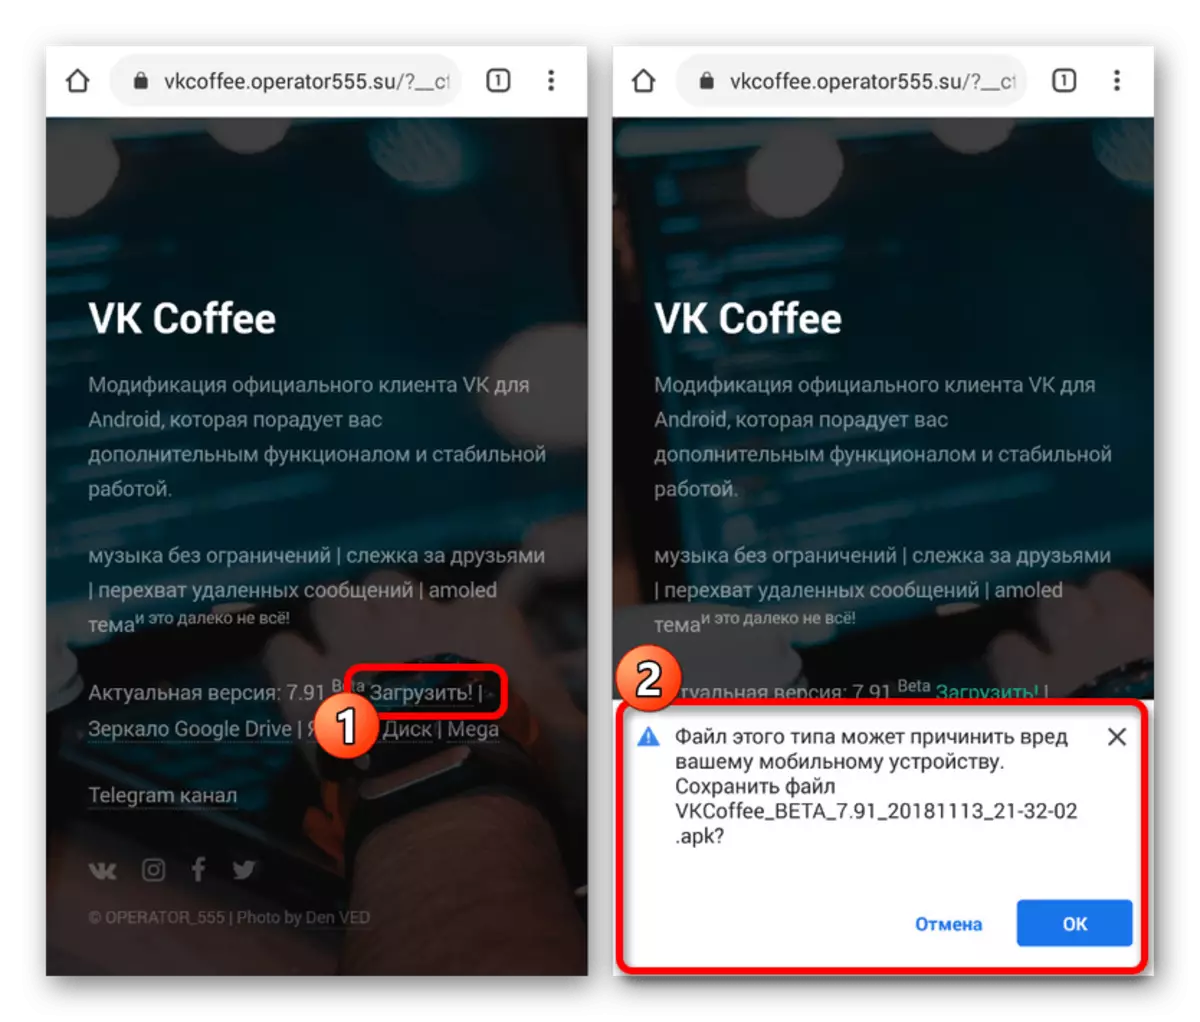 ดาวน์โหลด VK Coffee จากเว็บไซต์อย่างเป็นทางการบน Android